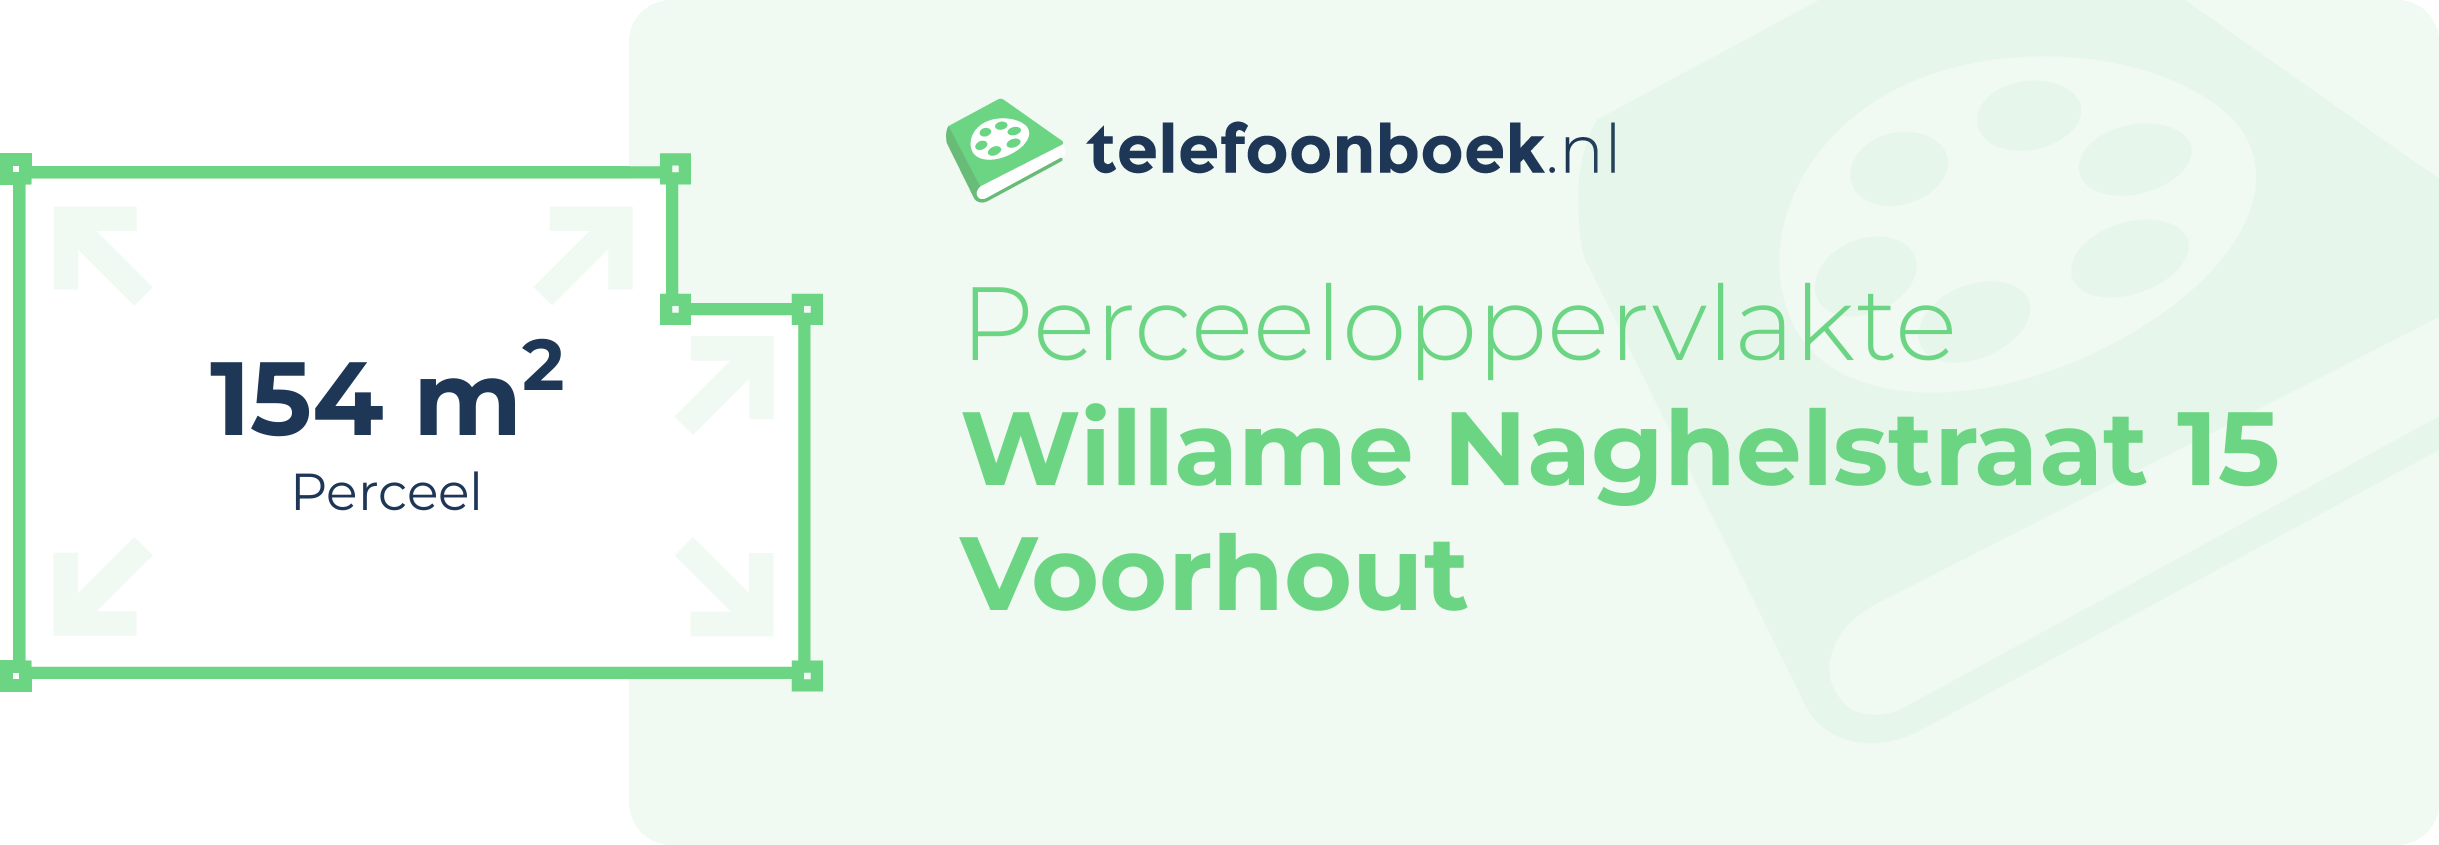 Perceeloppervlakte Willame Naghelstraat 15 Voorhout